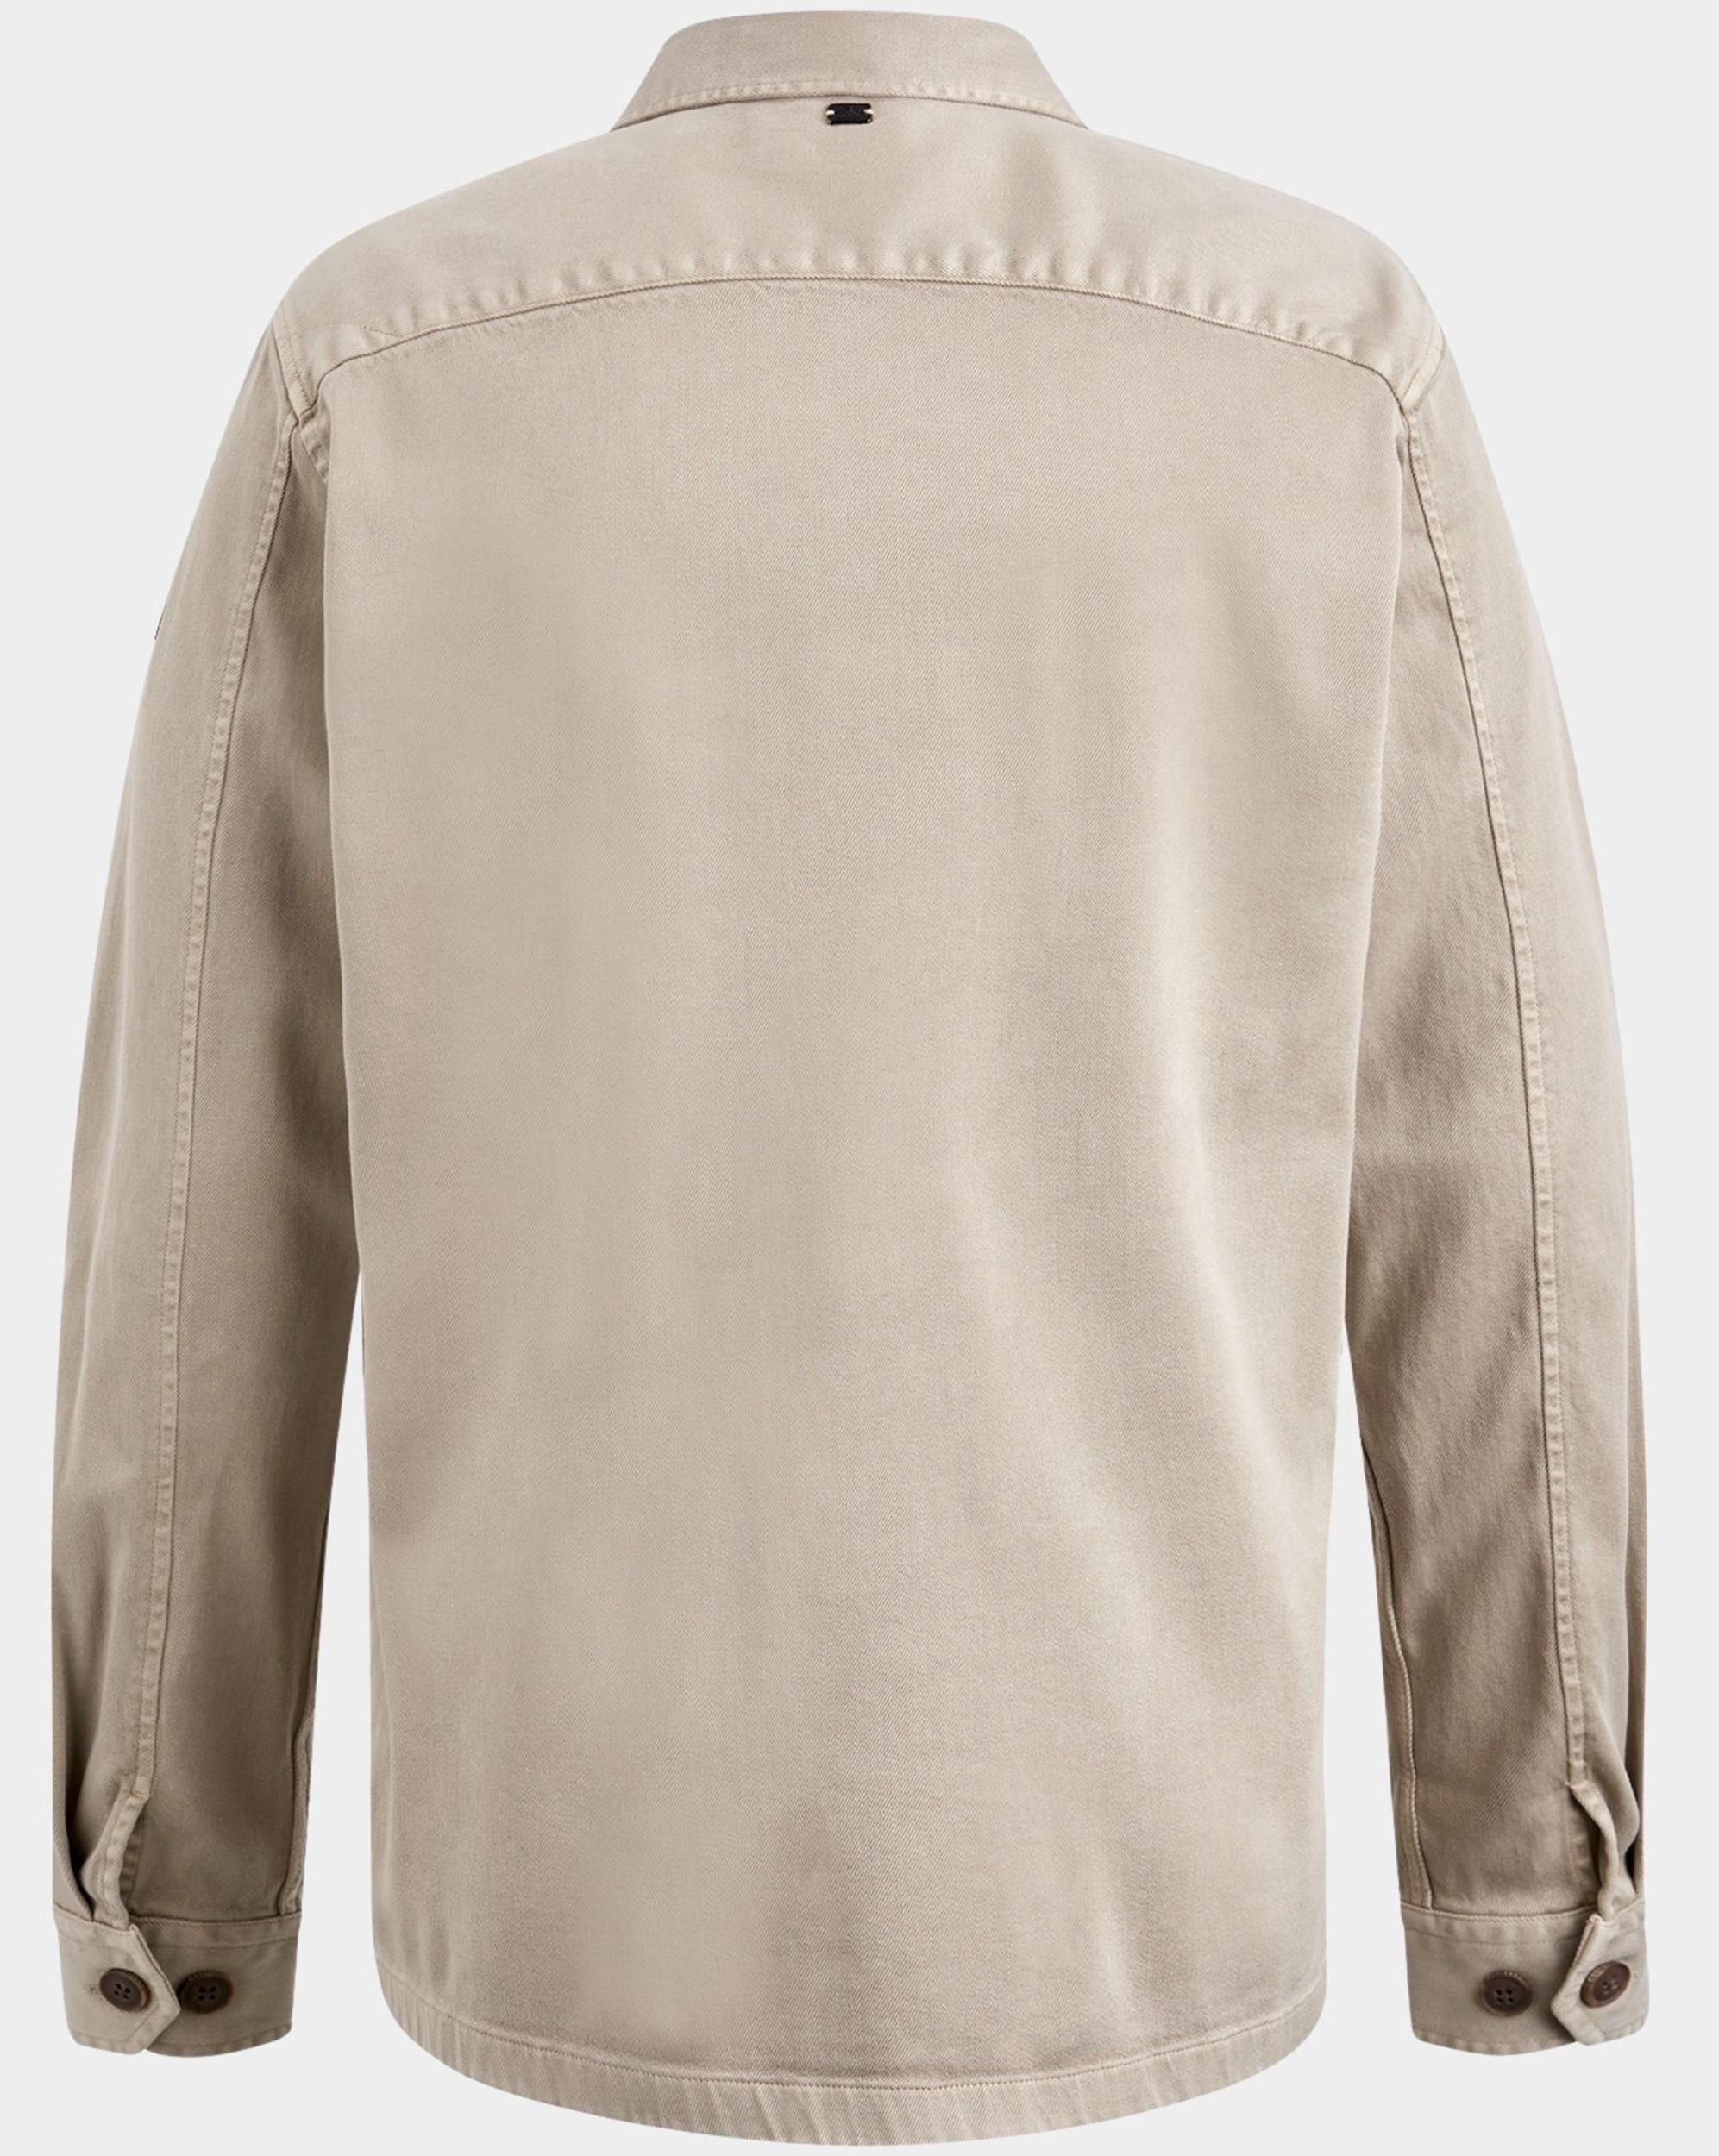 Vanguard Casual hemd lange mouw Beige Long Sleeve Shirt Gold Topaz VSI2402209/8265